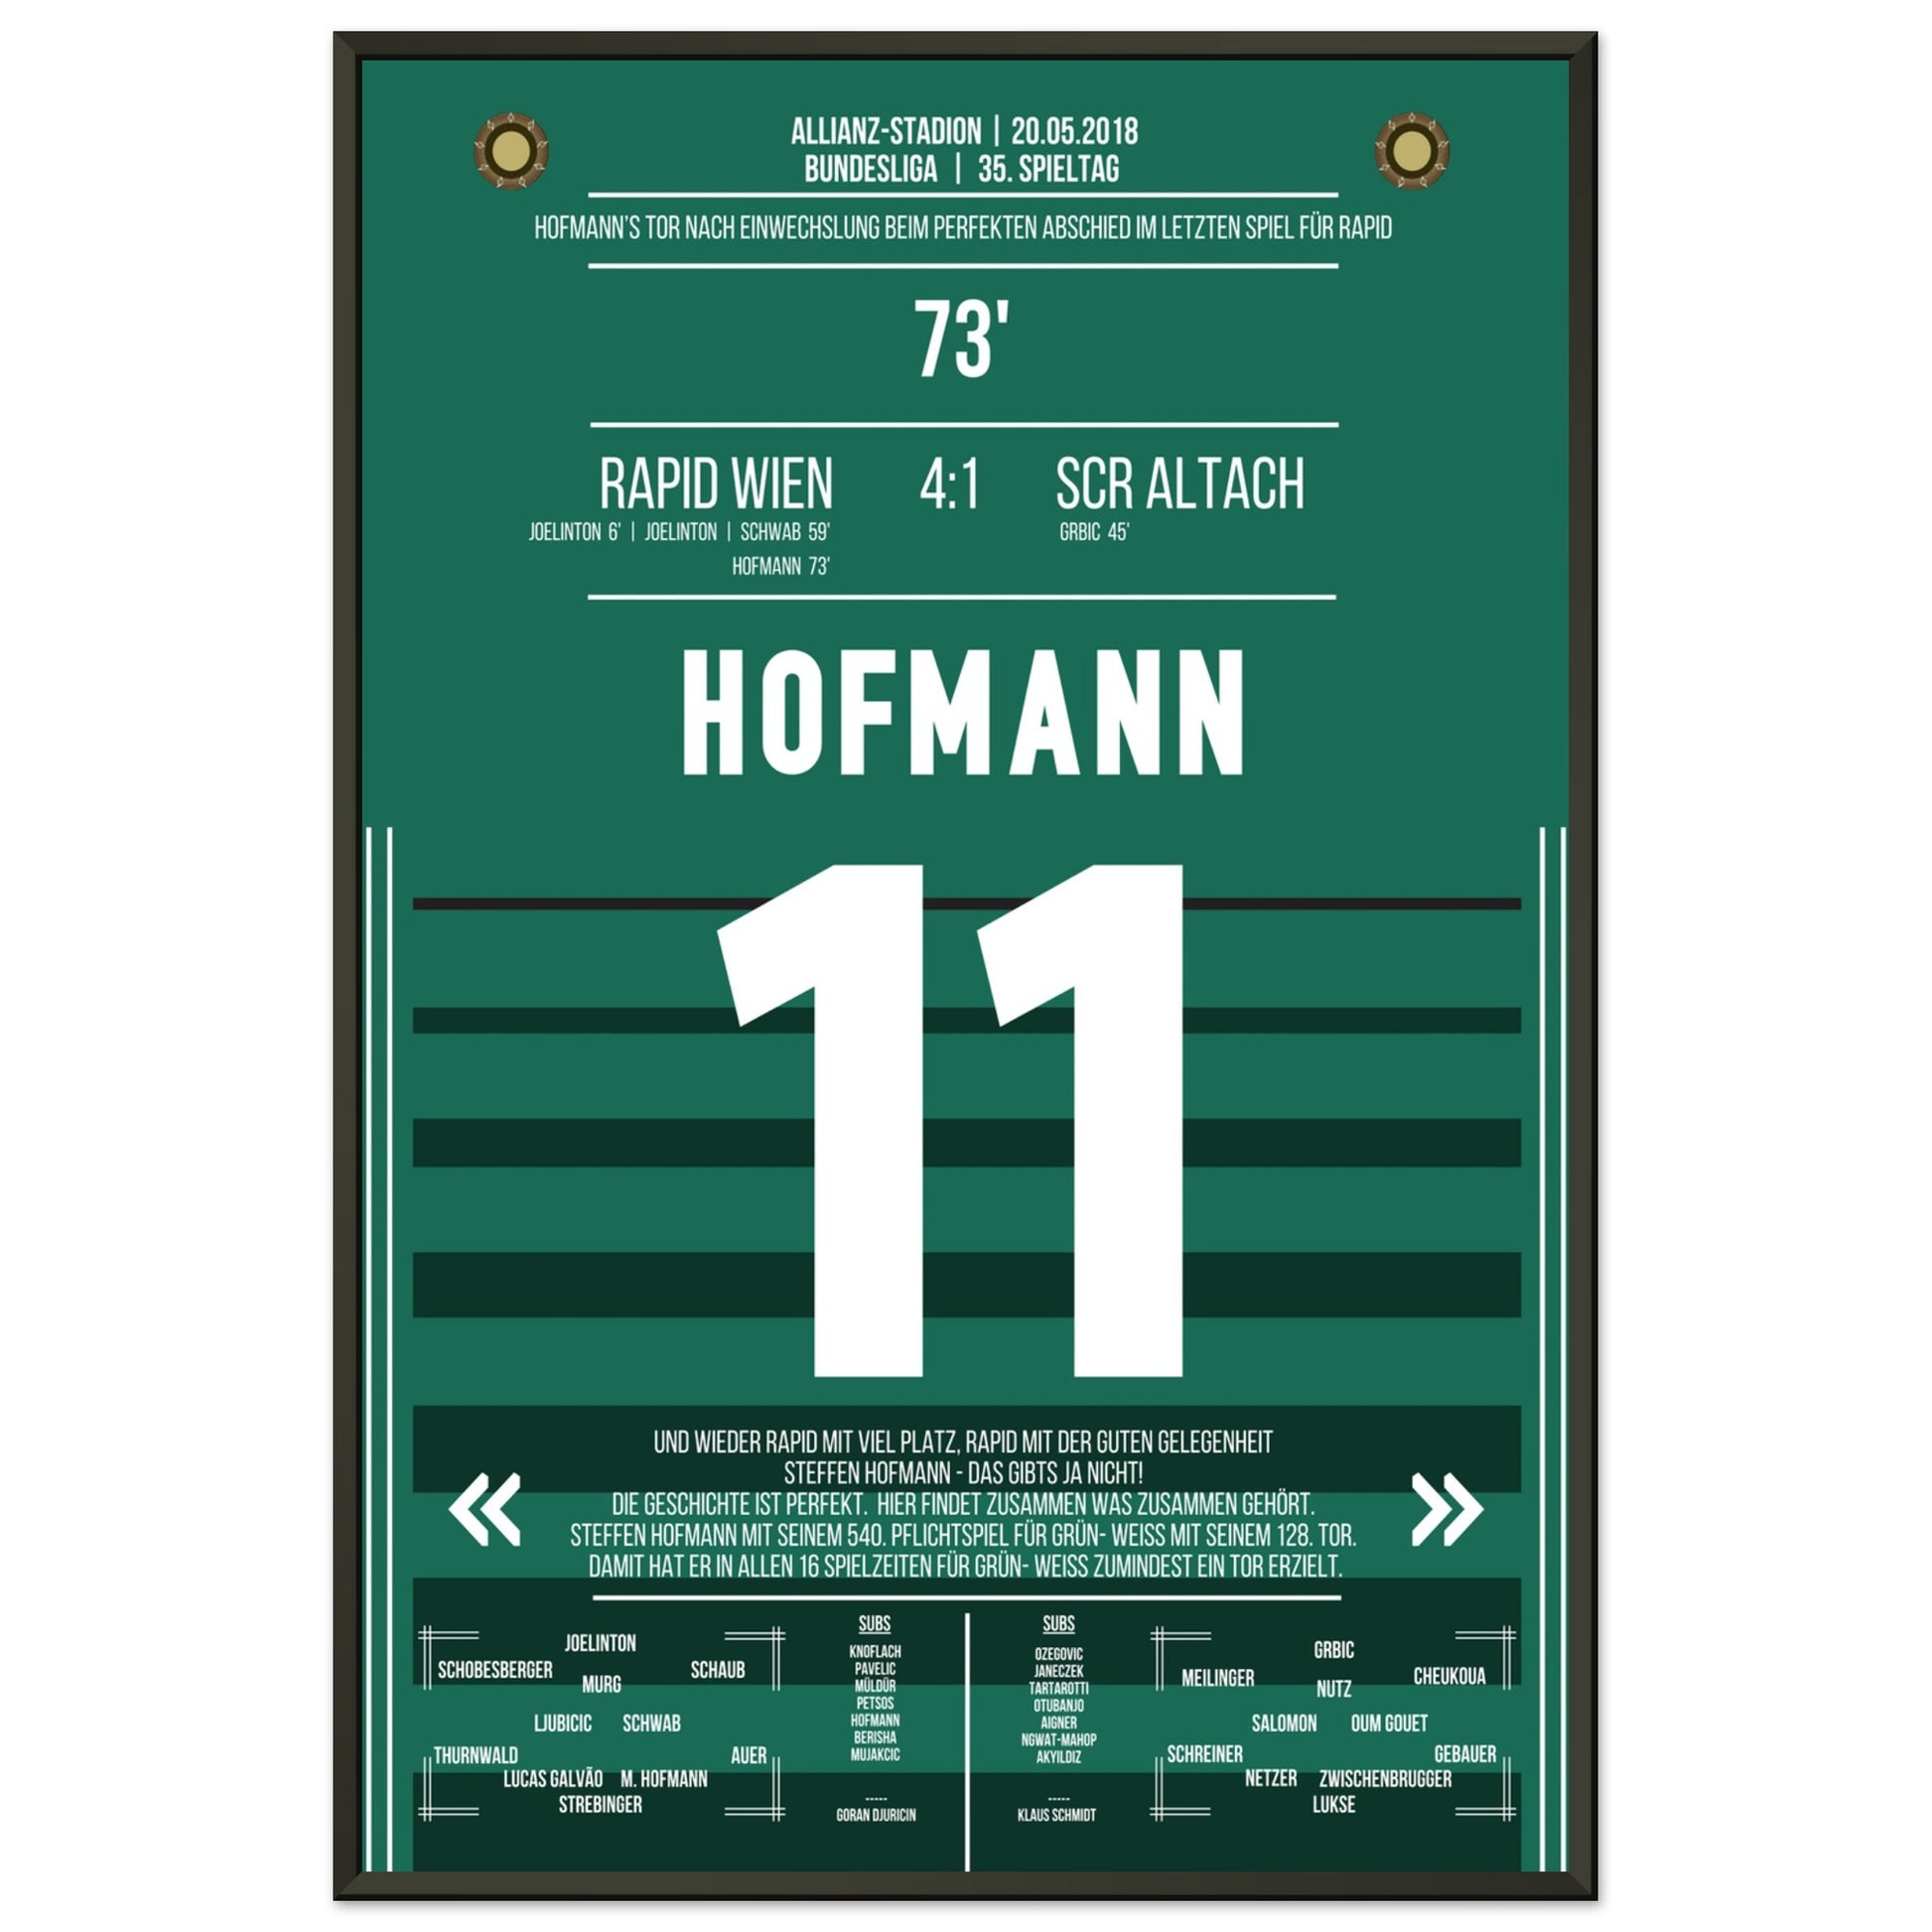 Hofmann's perfekter Abschied im letzten Spiel für Rapid 60x90-cm-24x36-Schwarzer-Aluminiumrahmen